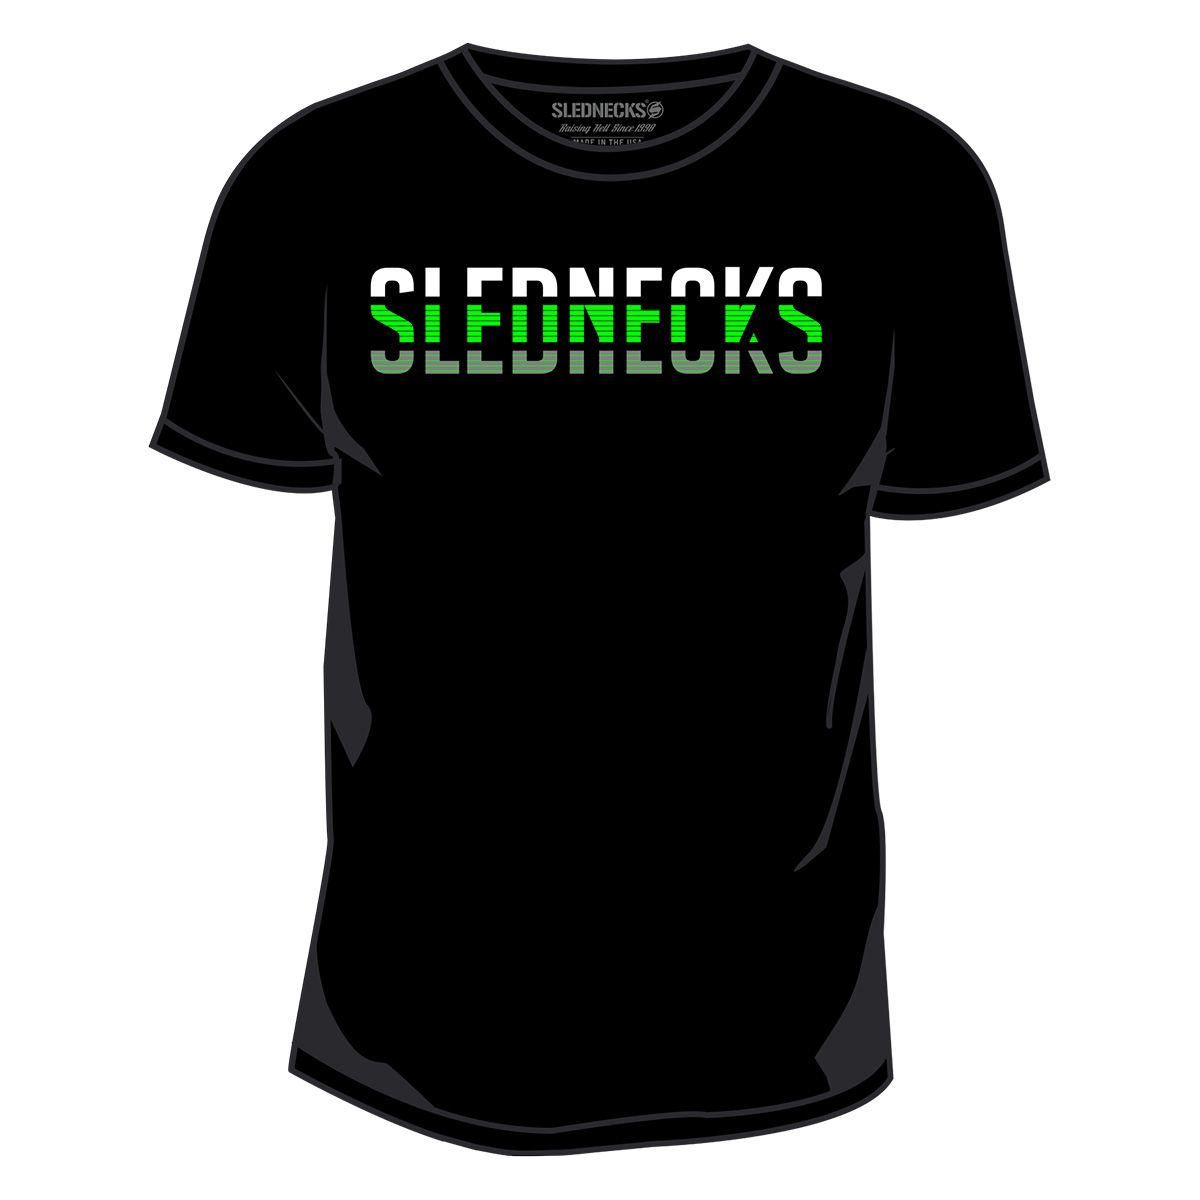 slednecks t-shirt shirts for men hacked